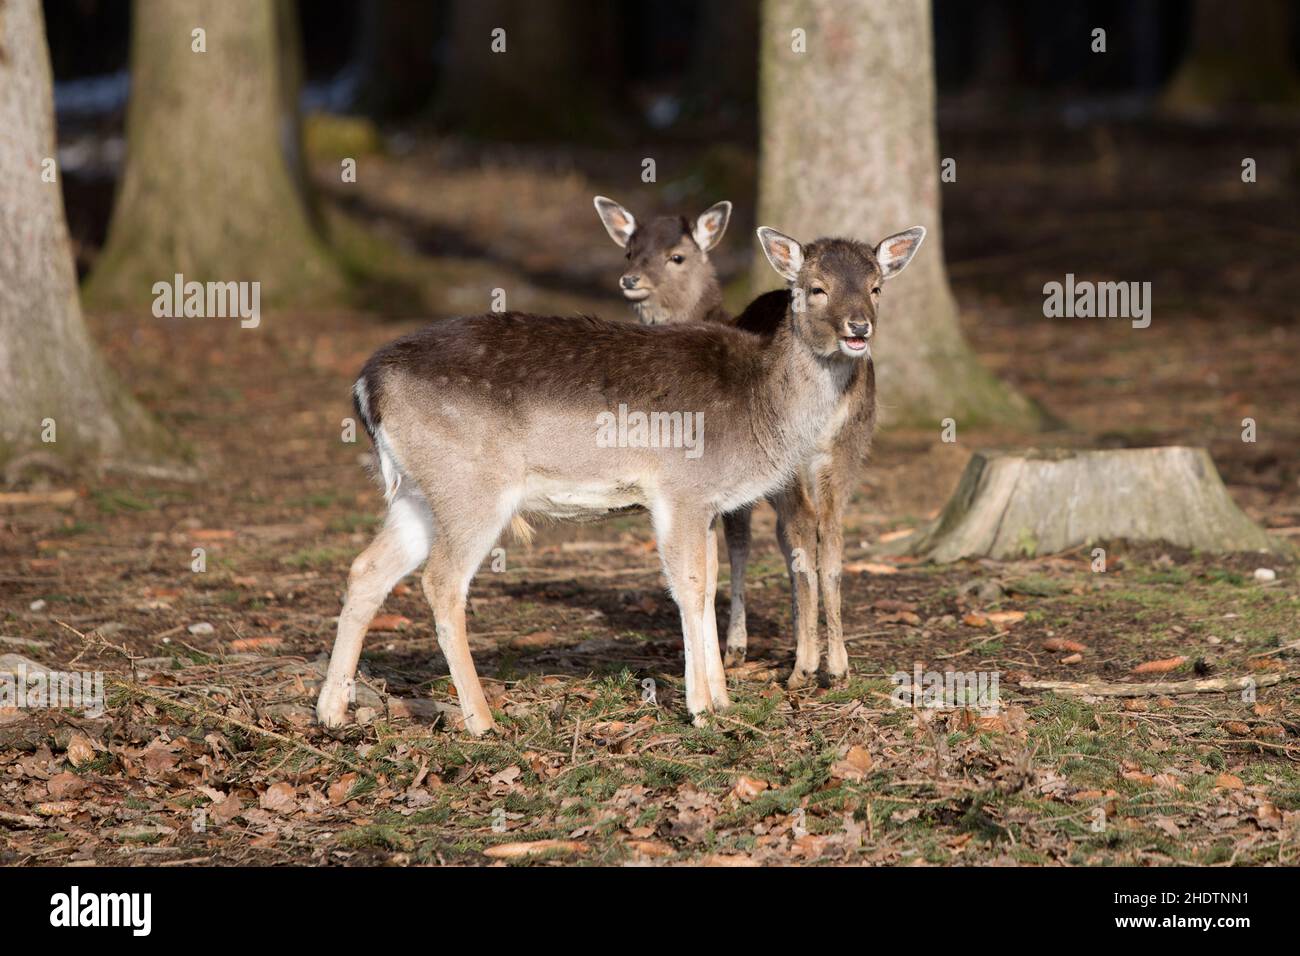 deer, deers, roe deer, stag Stock Photo